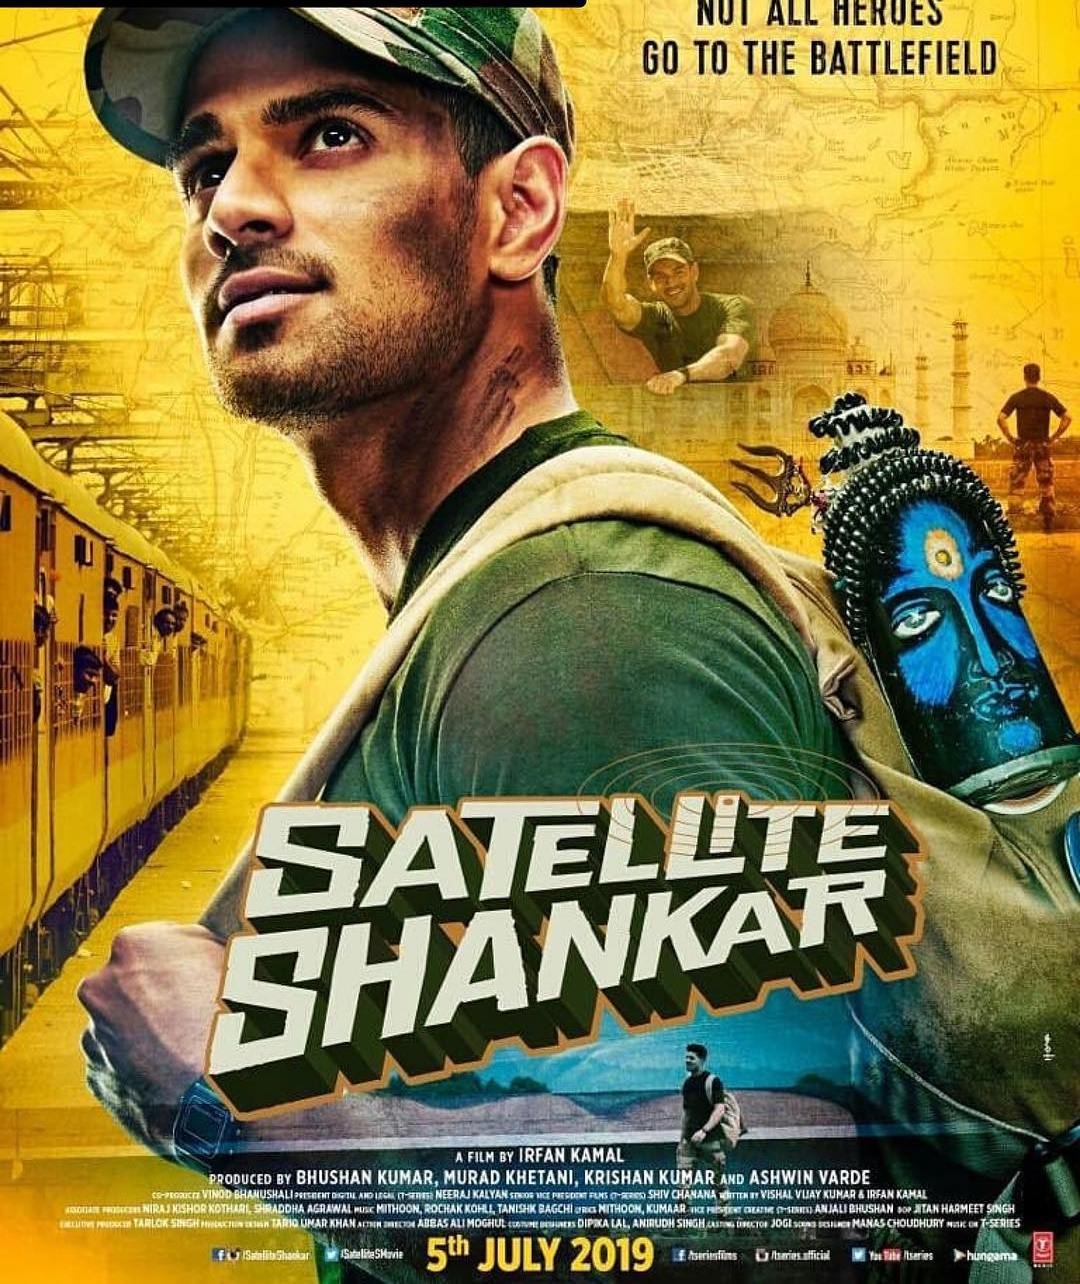 Satellite Shankar- Film Poster